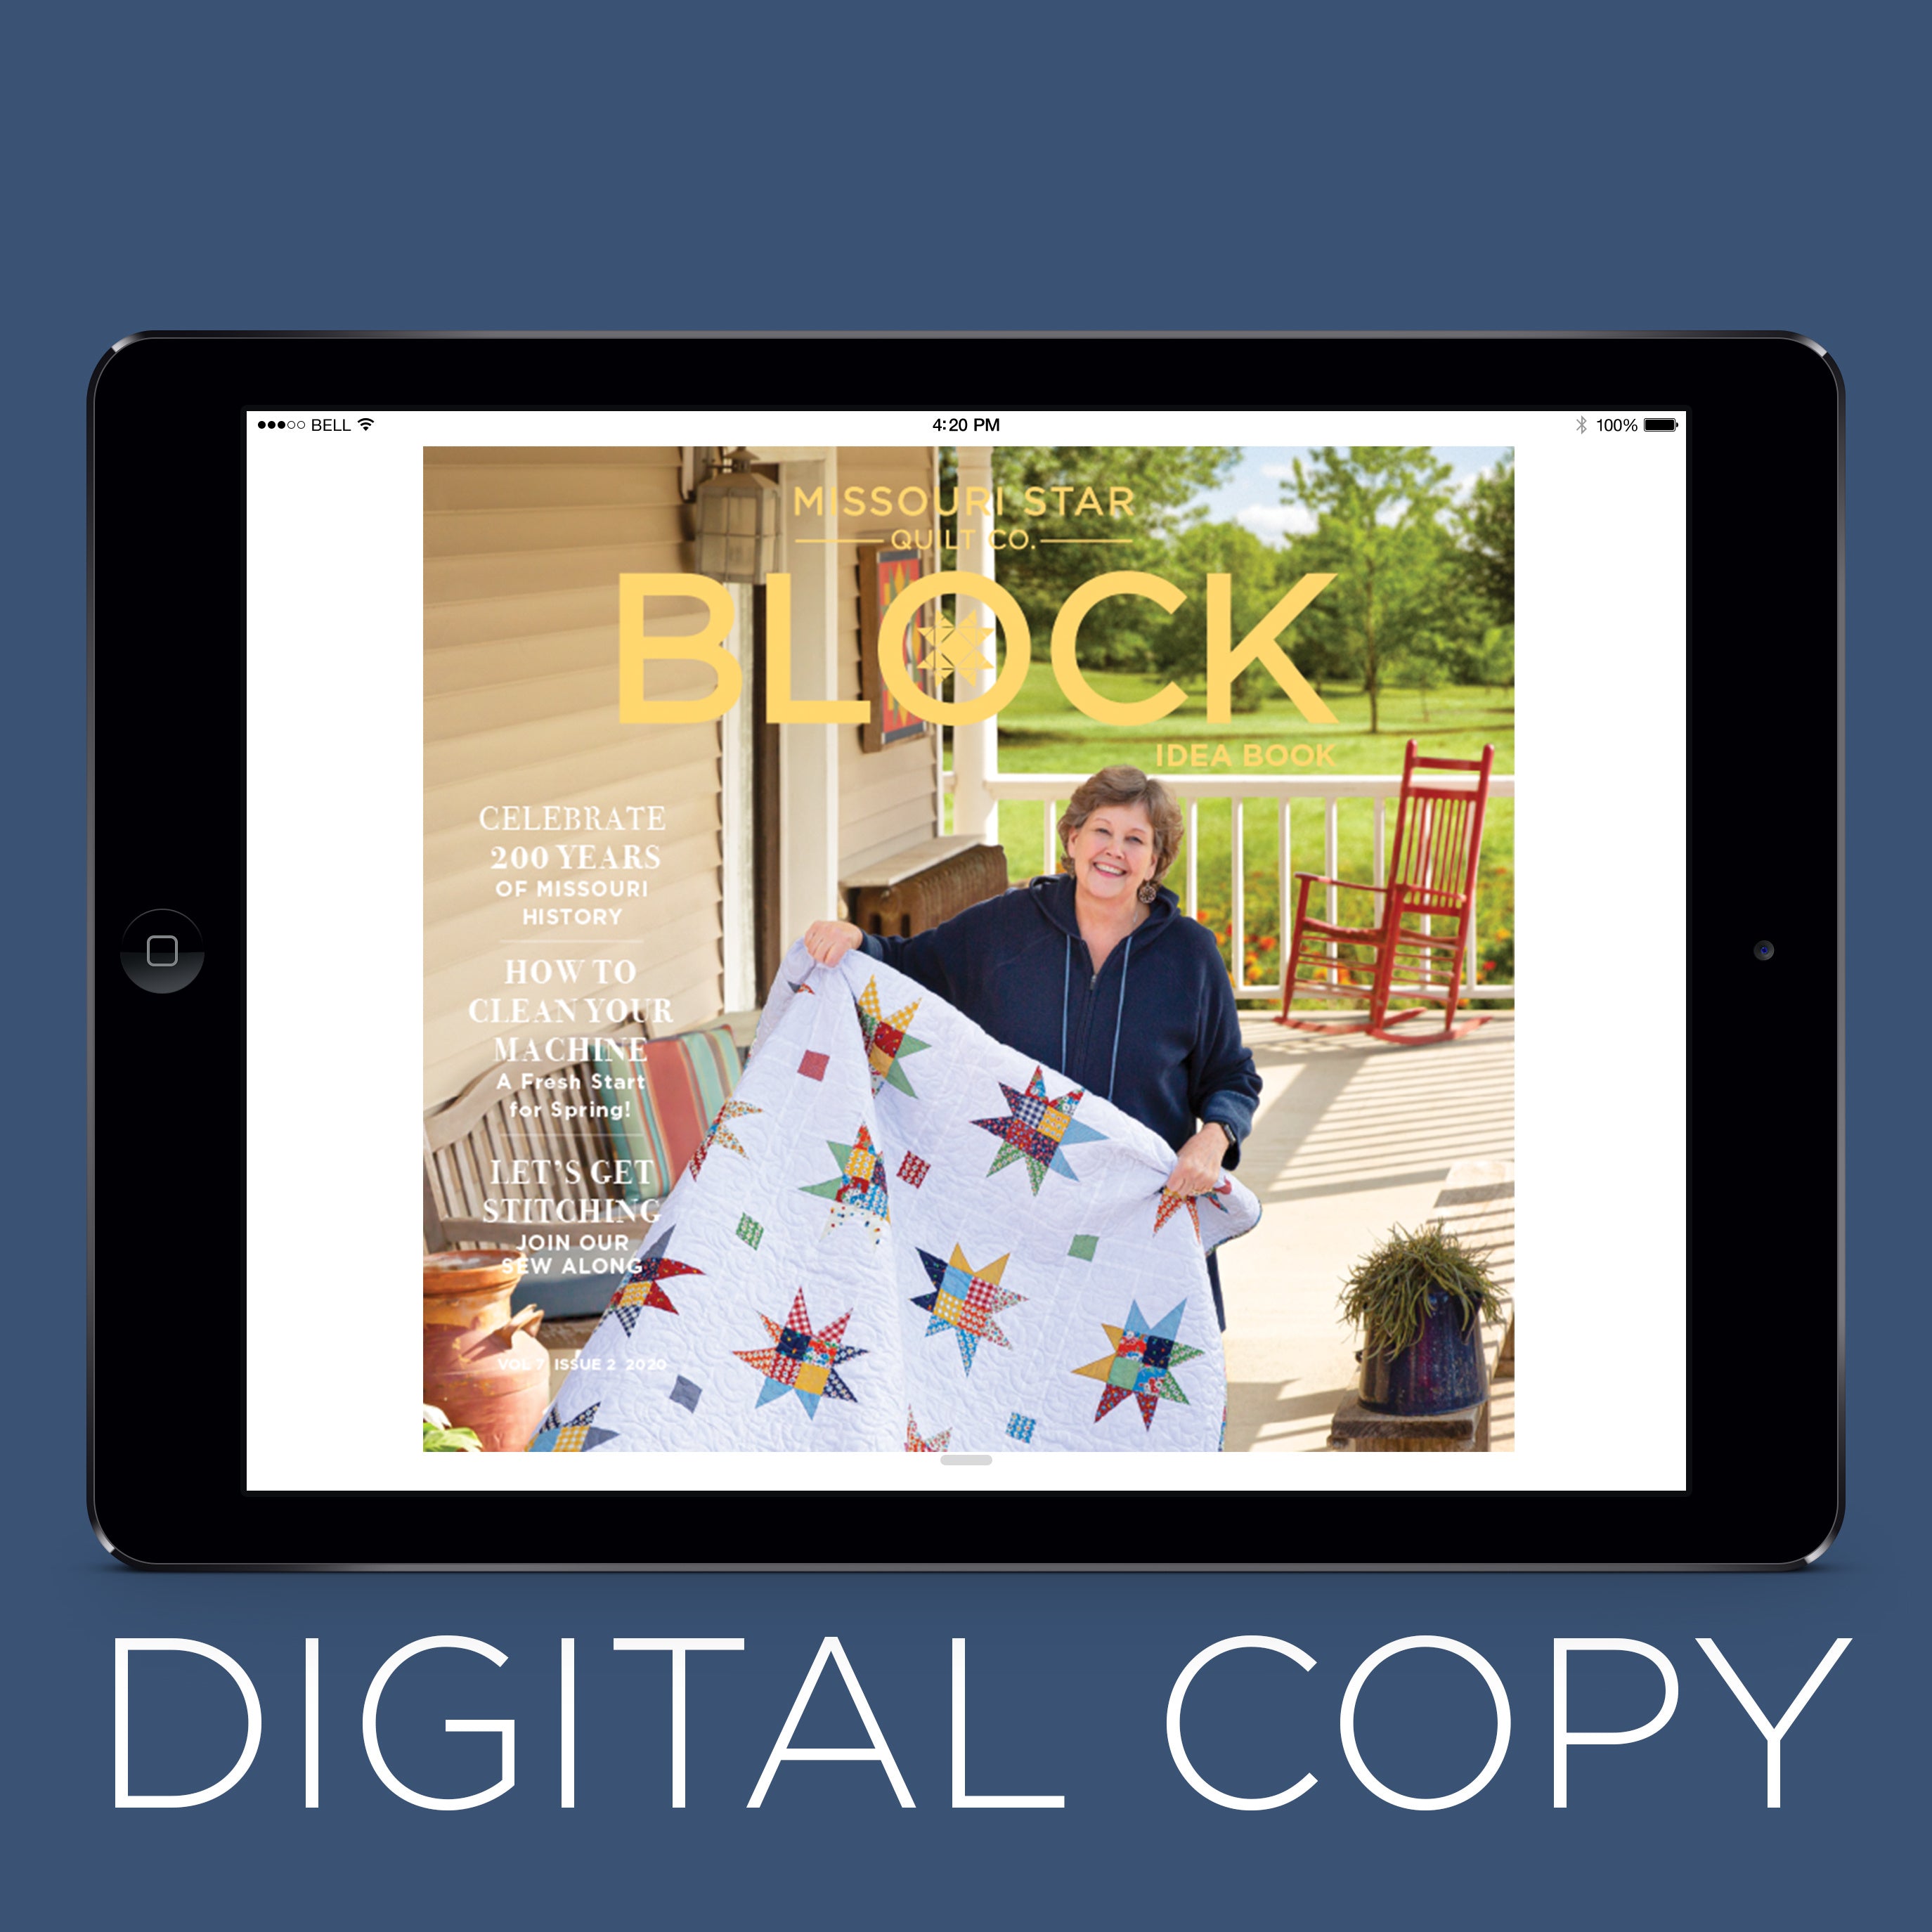 Missouri Star Quilt Co Block Magazine, Winter 2019, Vol 6, Issue 6